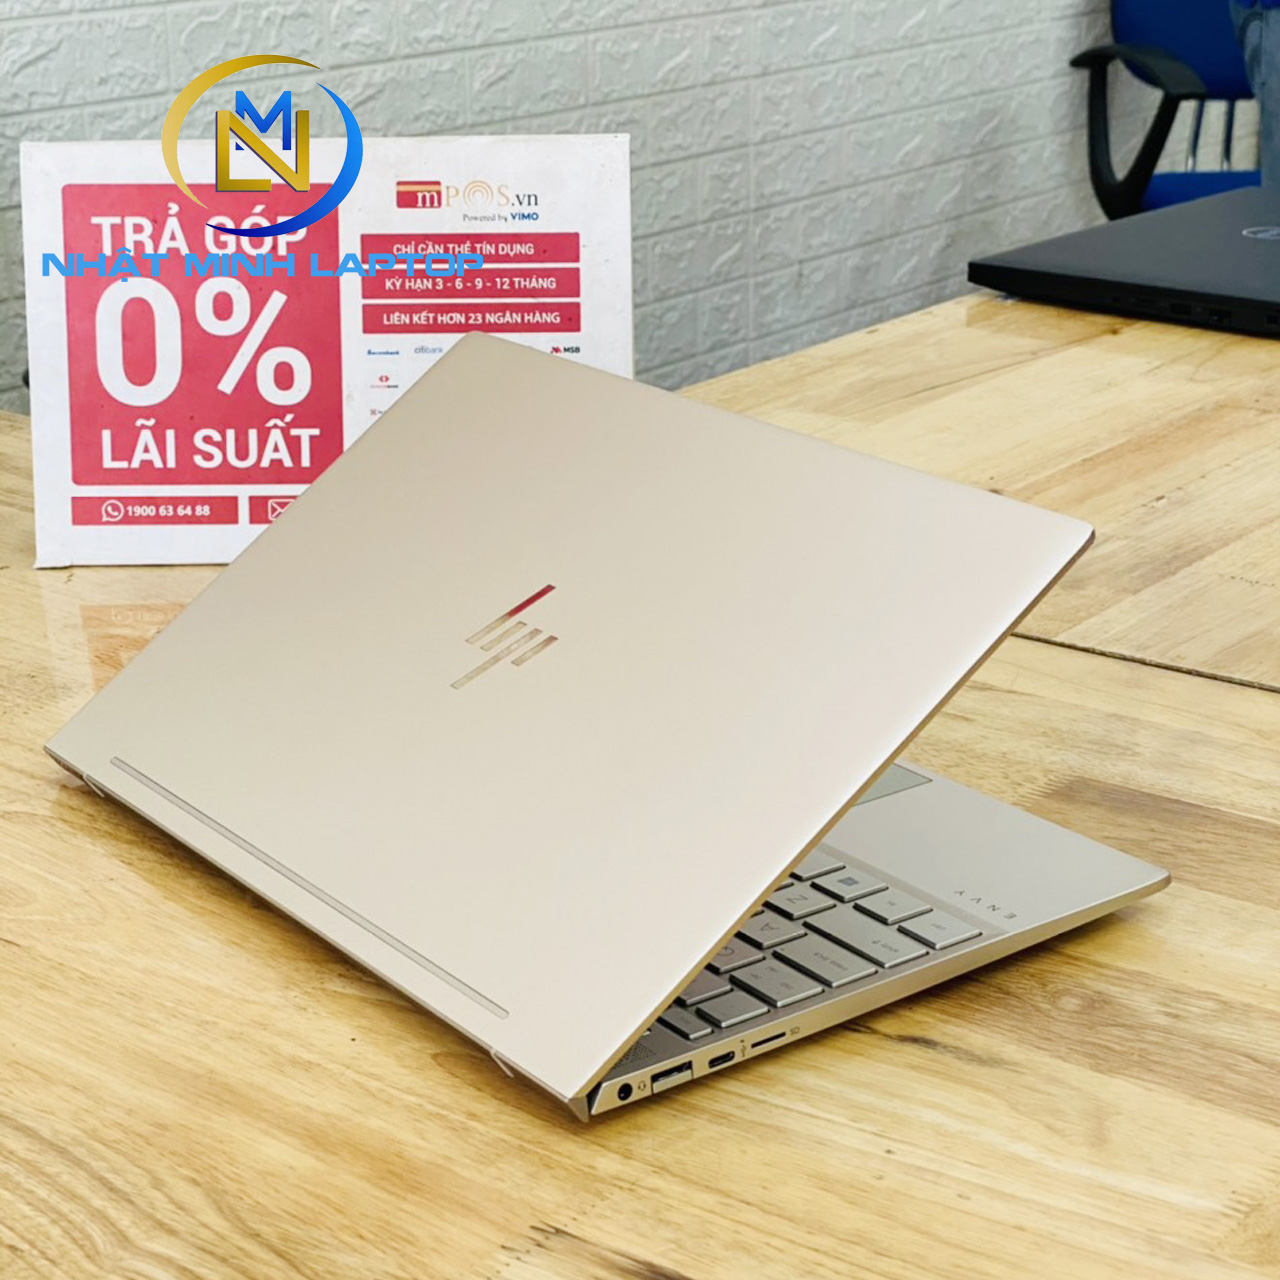 Laptop HP Envy 13-ah1011TU i5-8265U Ram 8G SSD 256G 13" Full HD Viền Mỏng Màu Gold Đời 2019